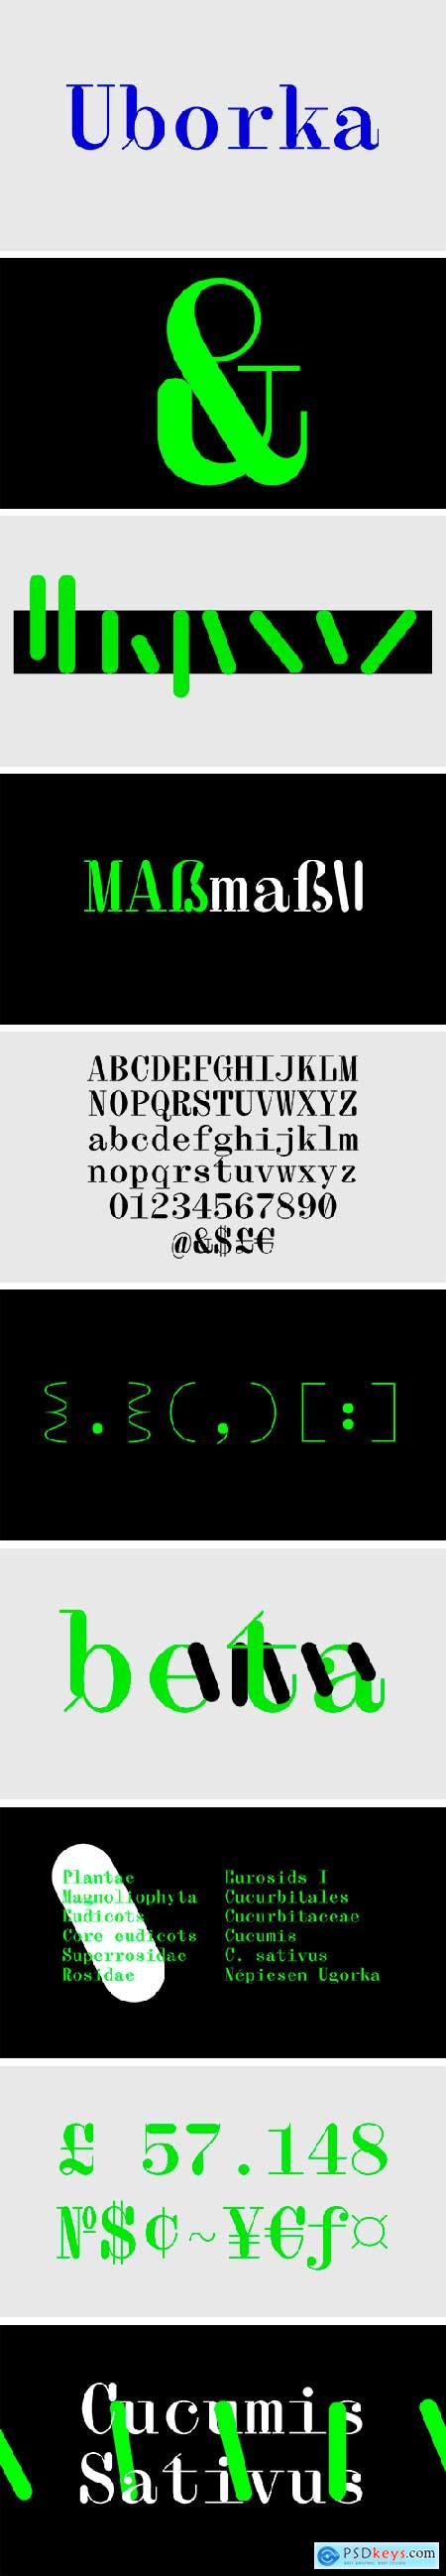 Uborka Monospace Serif Typeface